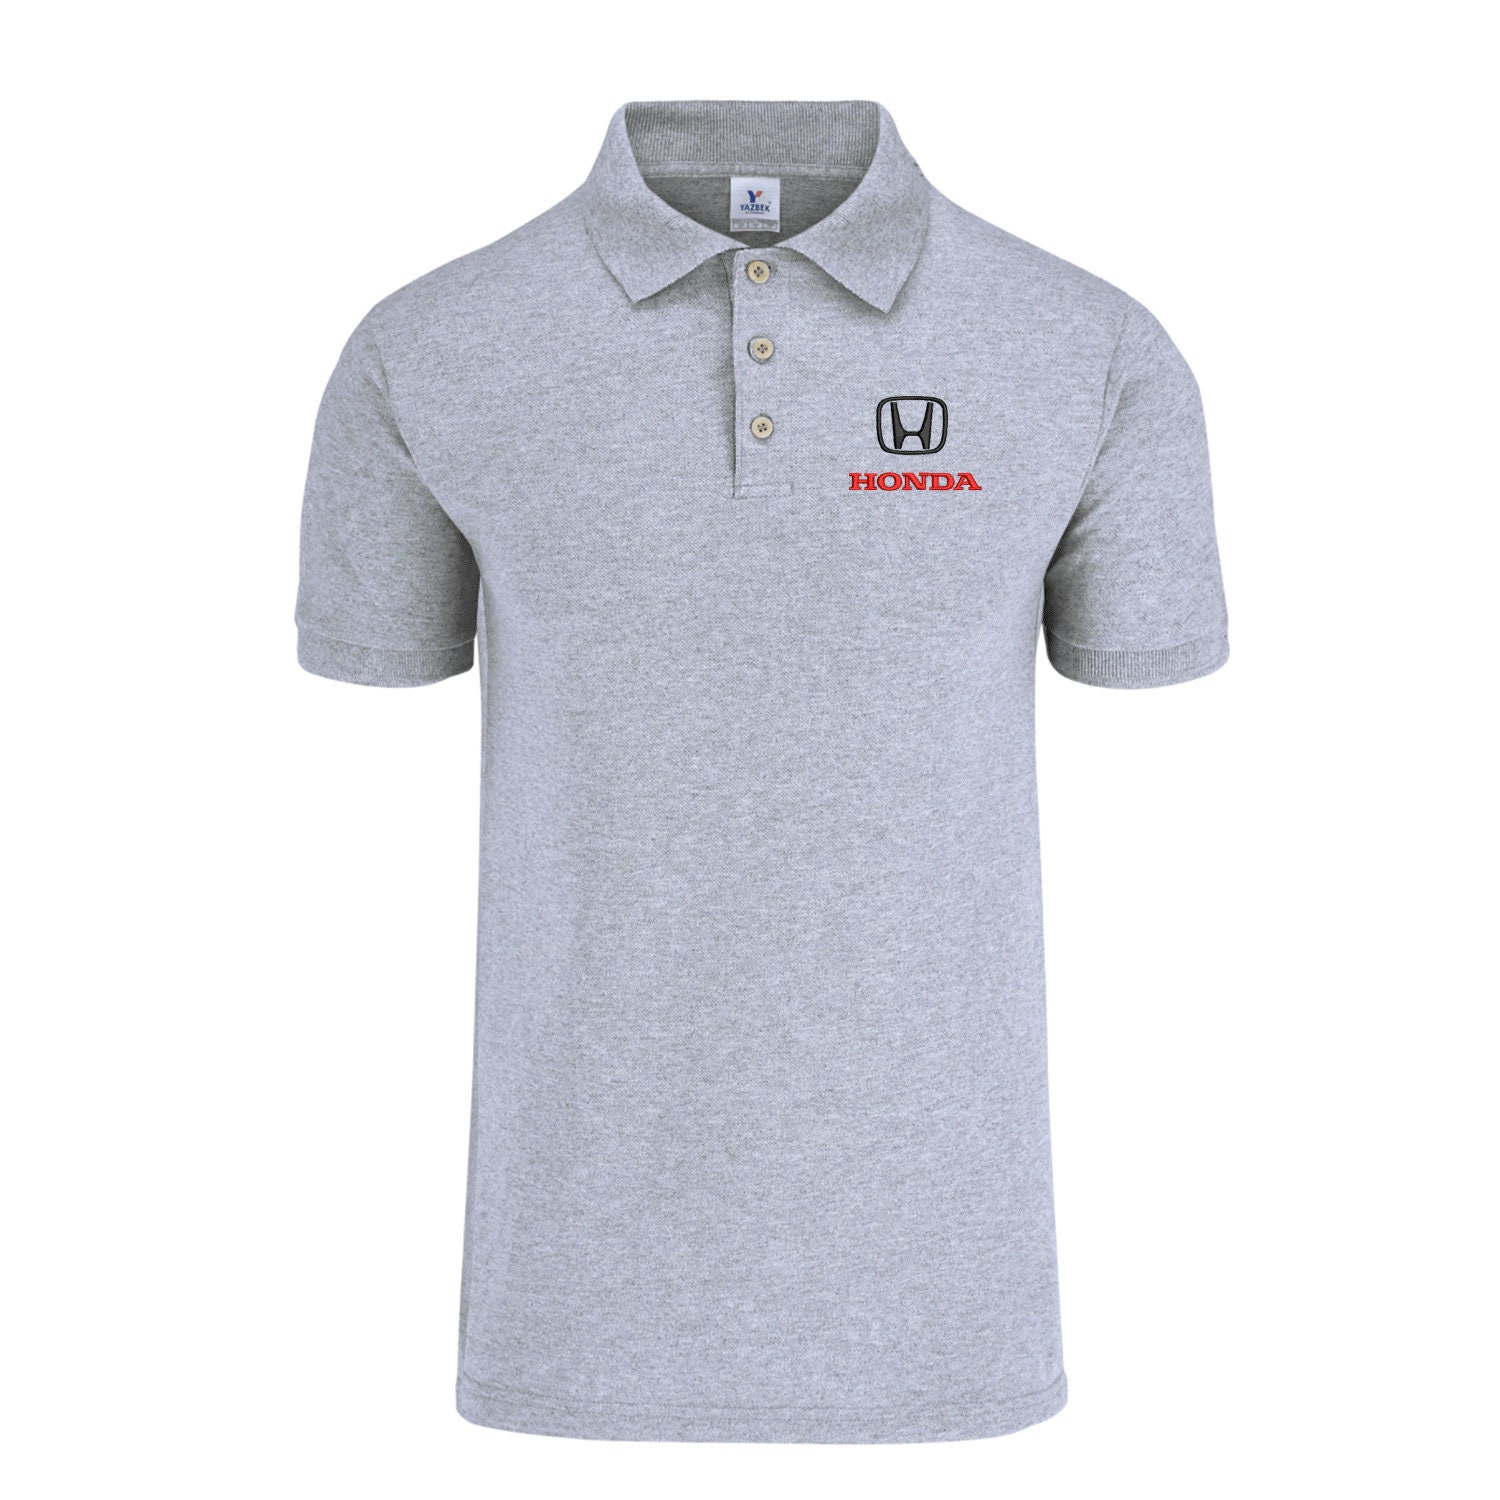 Honda Logo Polo Embroidery Shirt Men